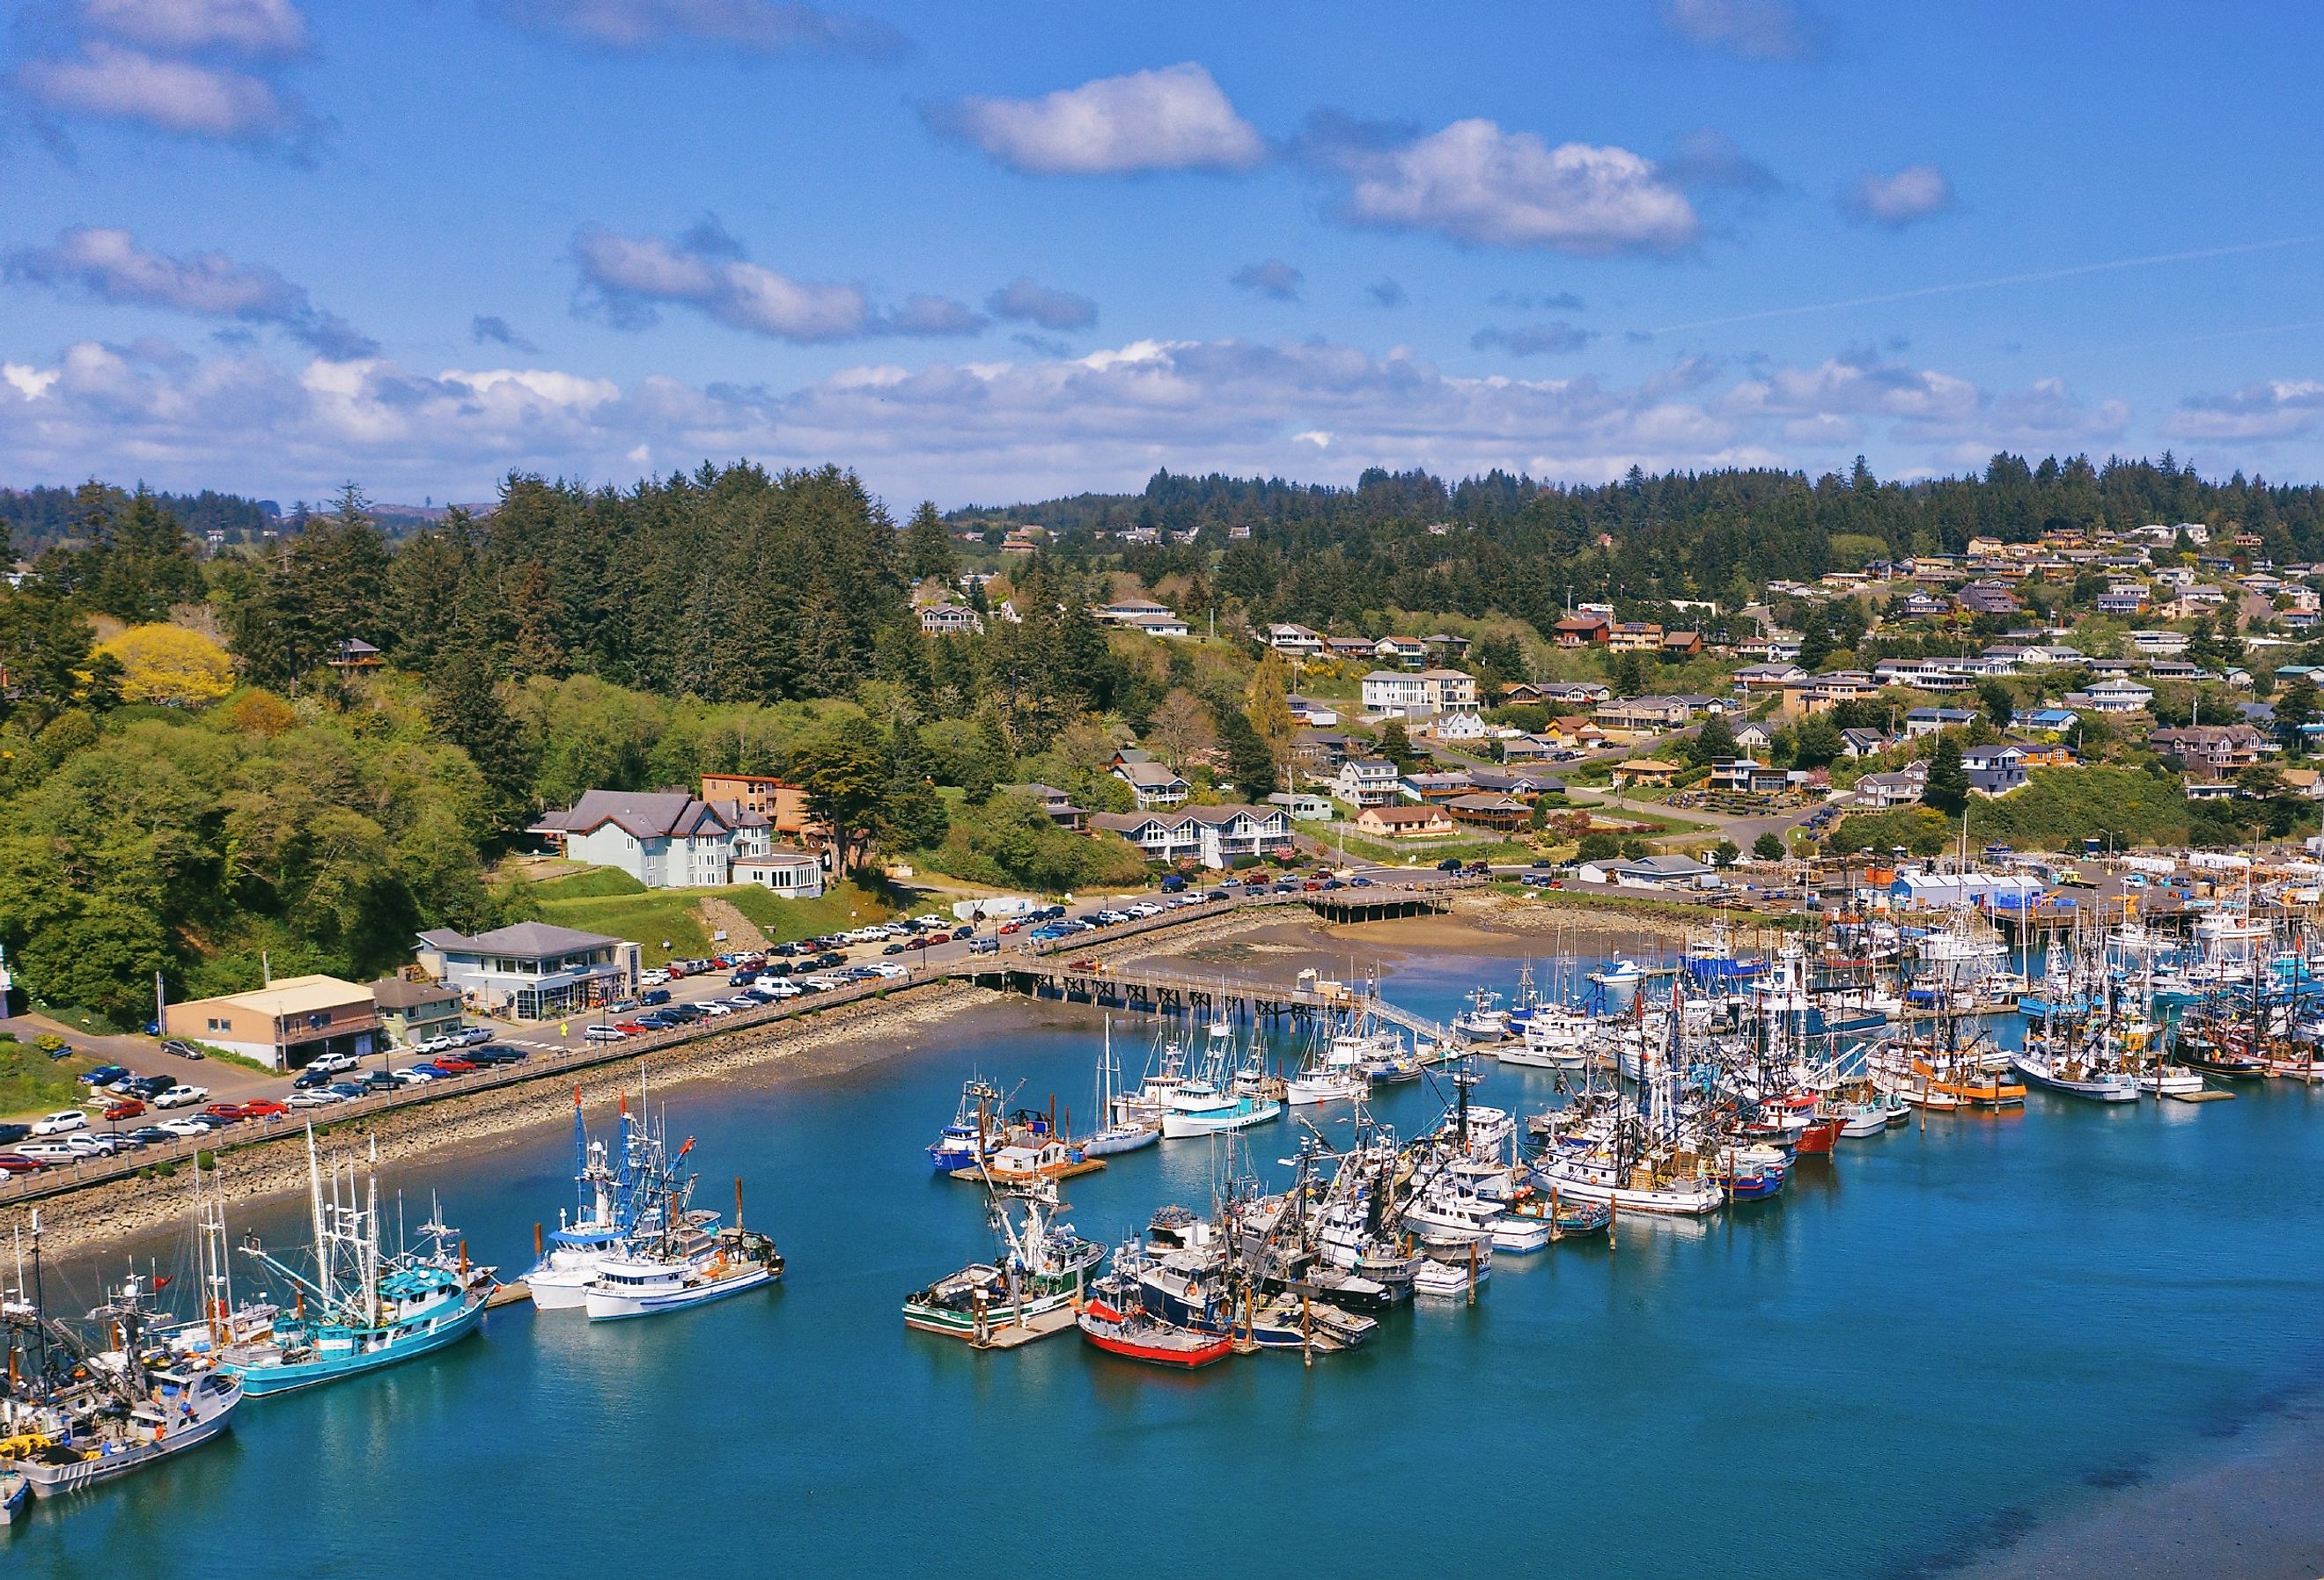 Aerial view of fishing fleet in Yaquina bay harbor marina in Newport, Oregon.